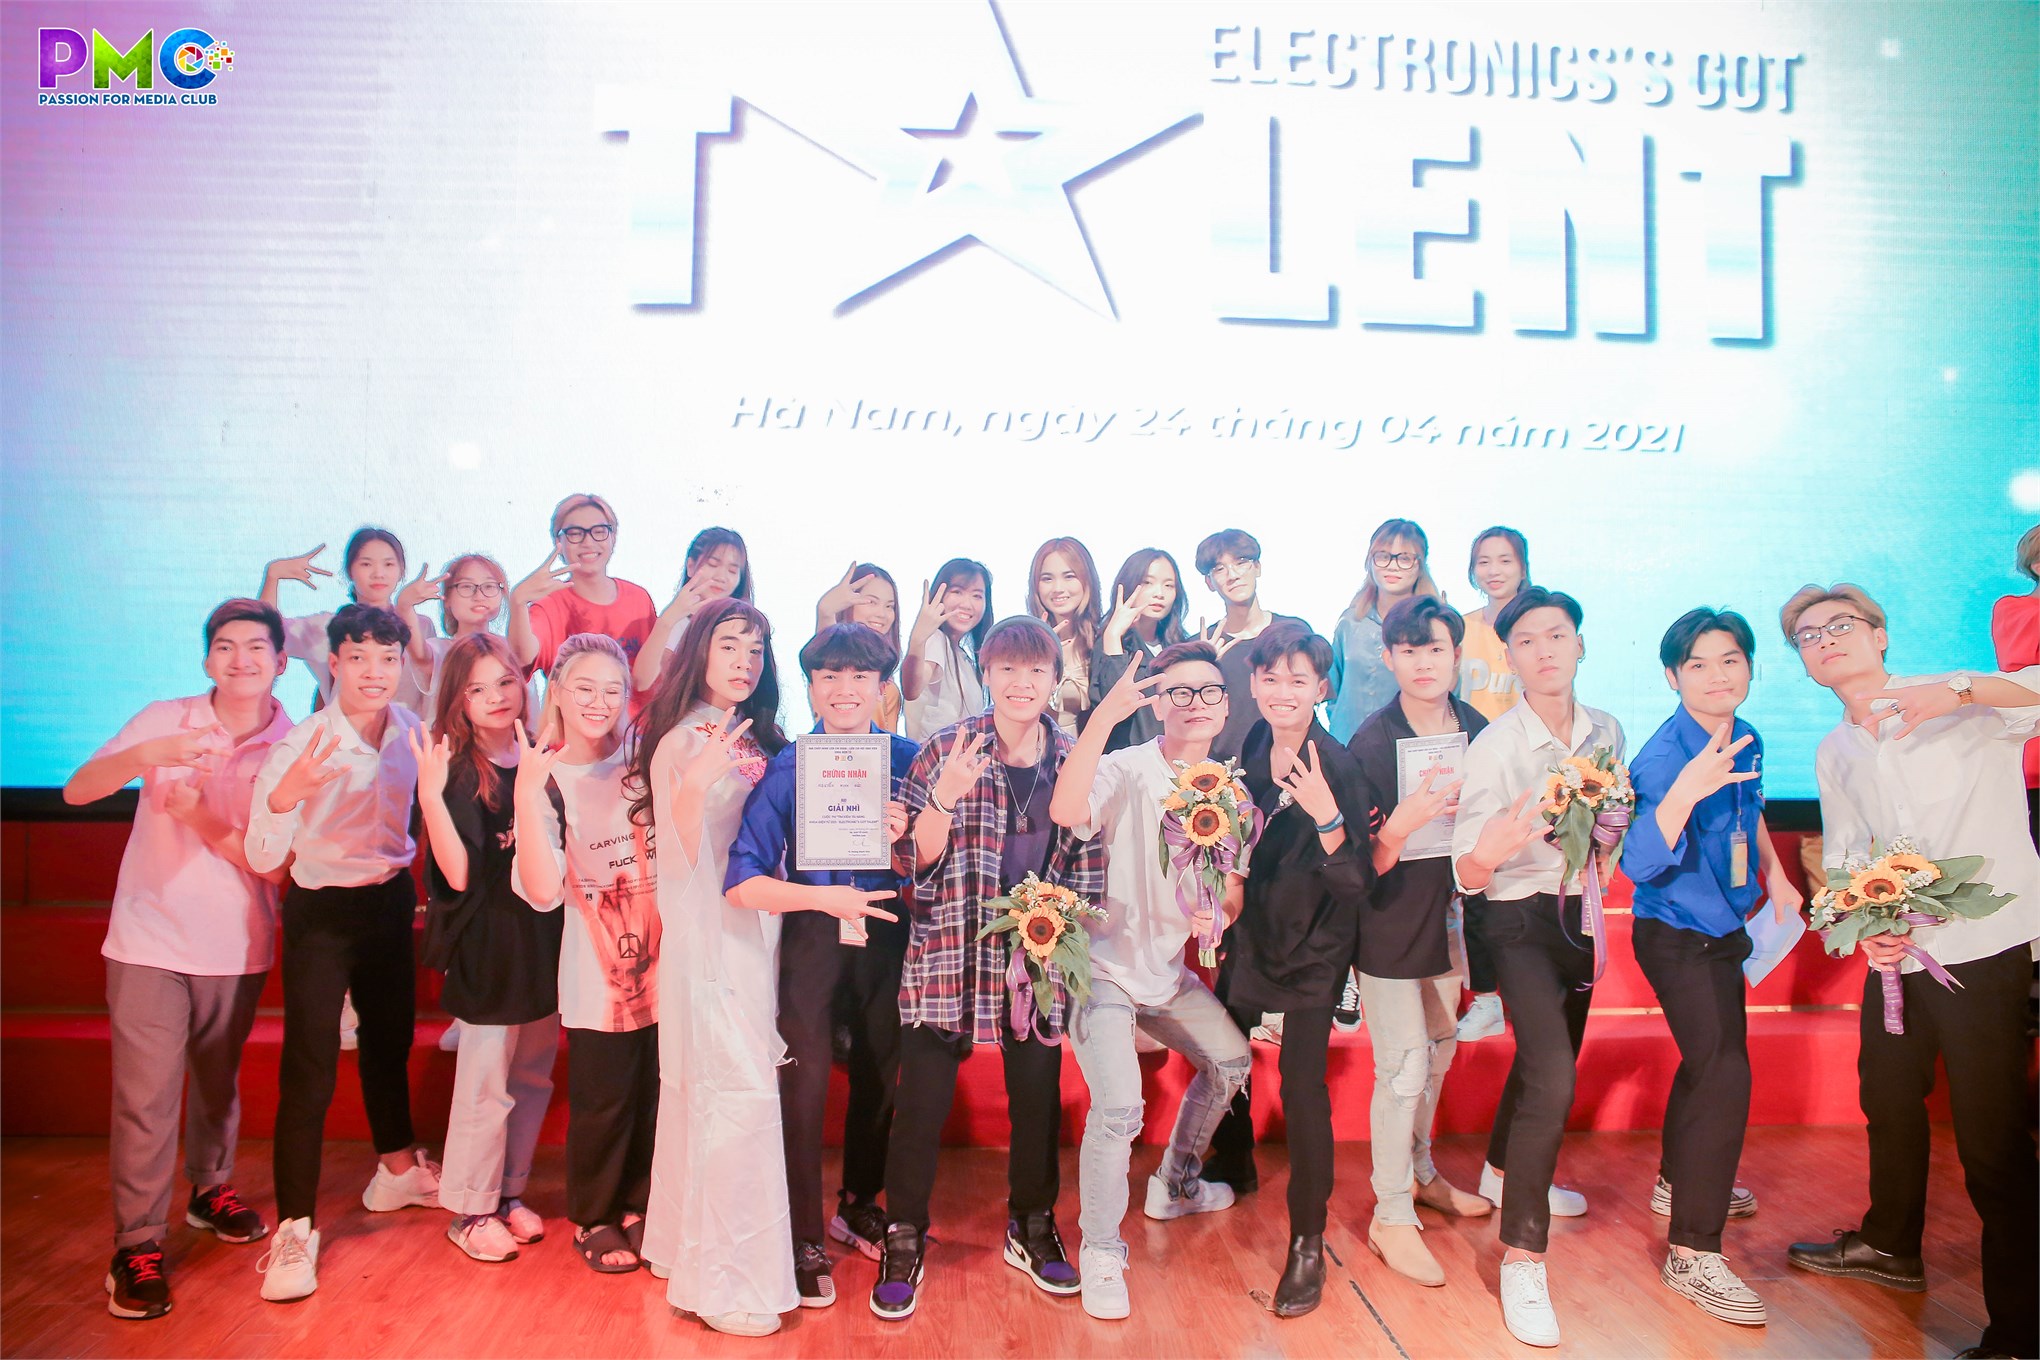 Vòng chung kết cuộc thi `Tìm kiếm tài năng khoa Điện tử 2021 - Electronic's Got Talent`